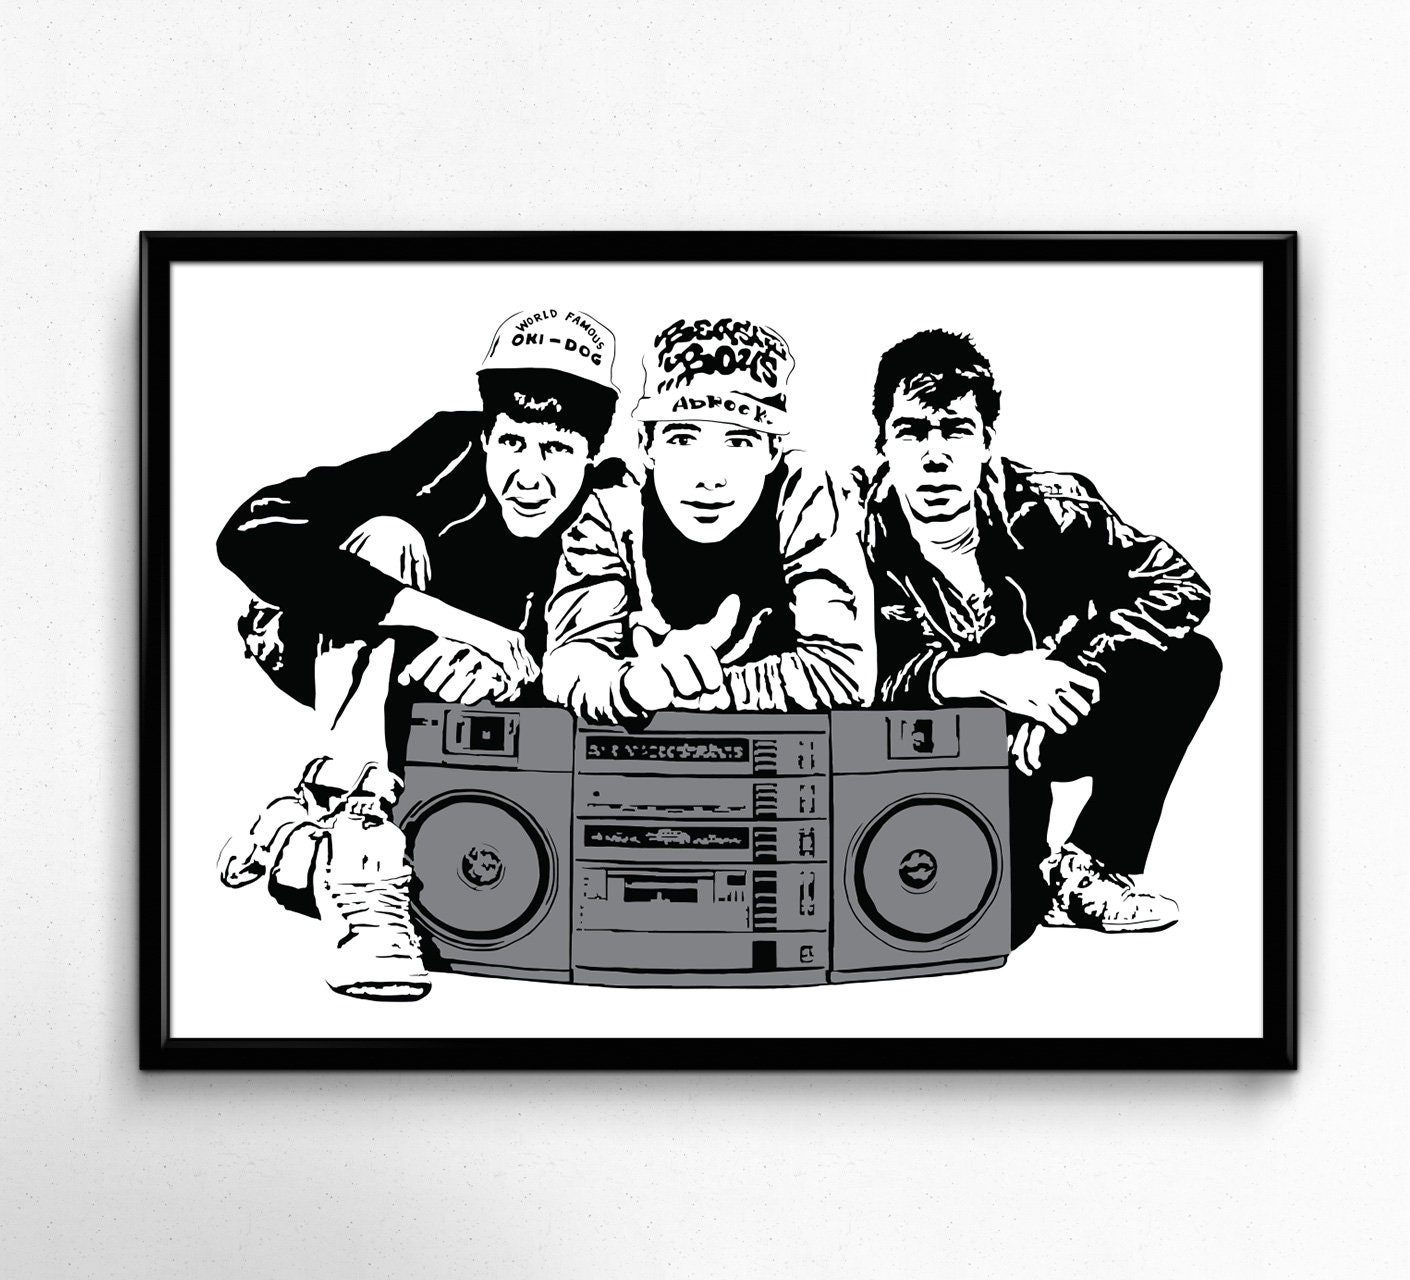 Beastie Boys Art